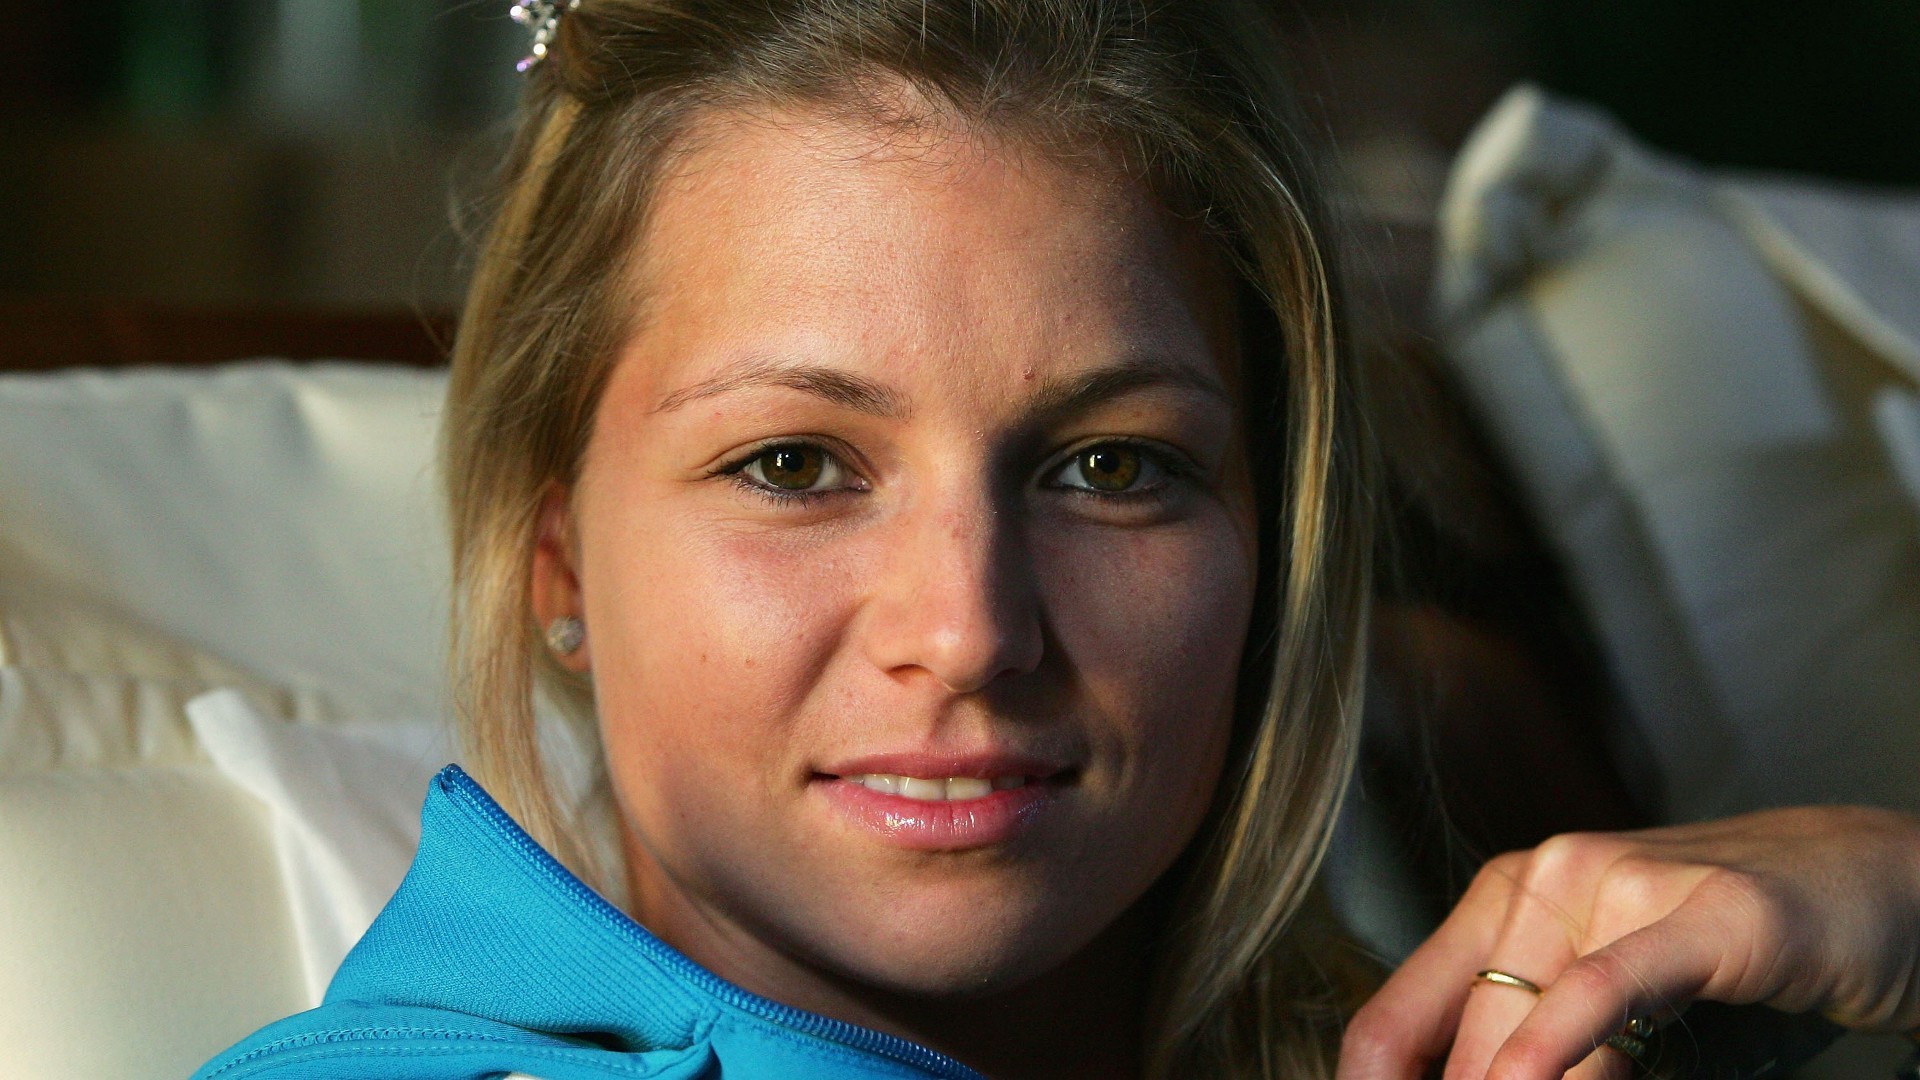 People 1920x1080 Maria Kirilenko women blonde tennis player face smiling looking at viewer athletes Russian women